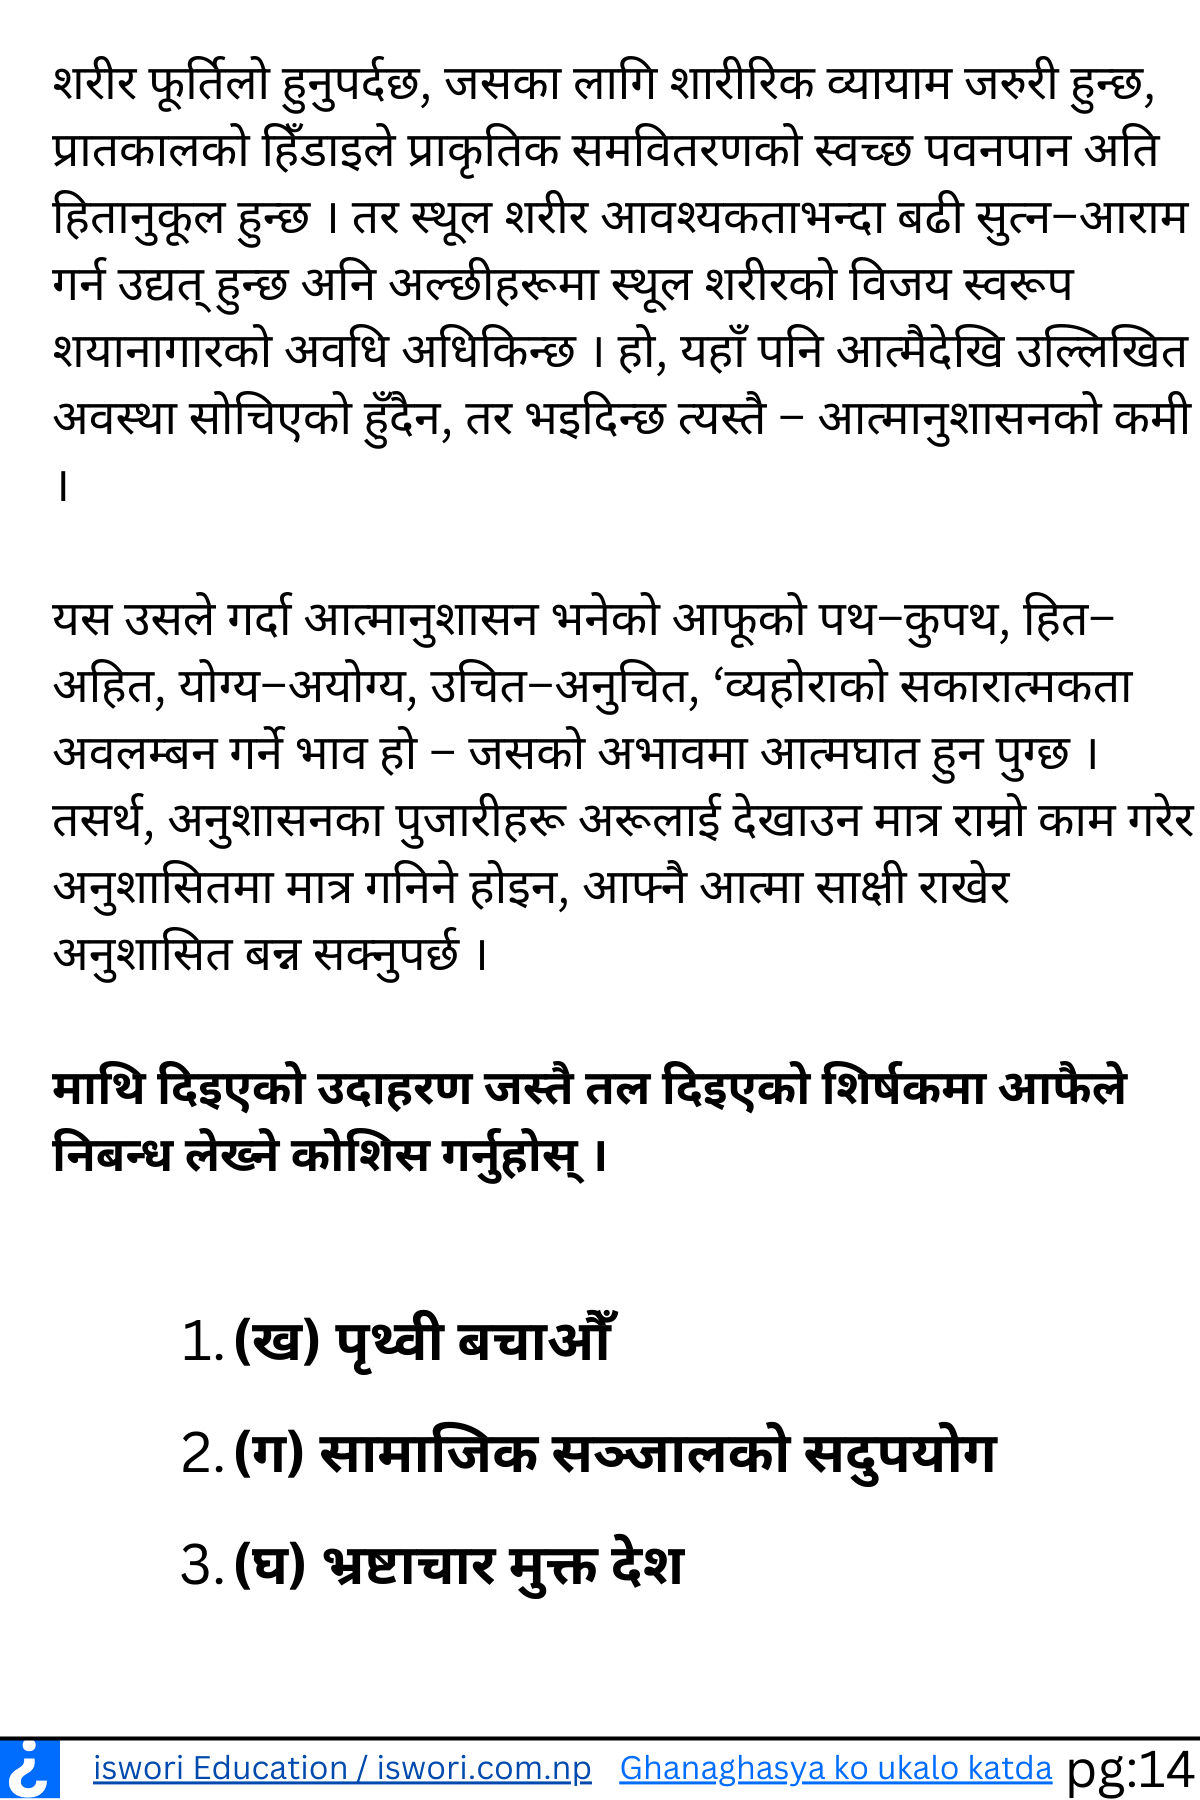 Ghanaghasya Ko Ukalo Katda Exercise Unit 3 Class 12 Nepali